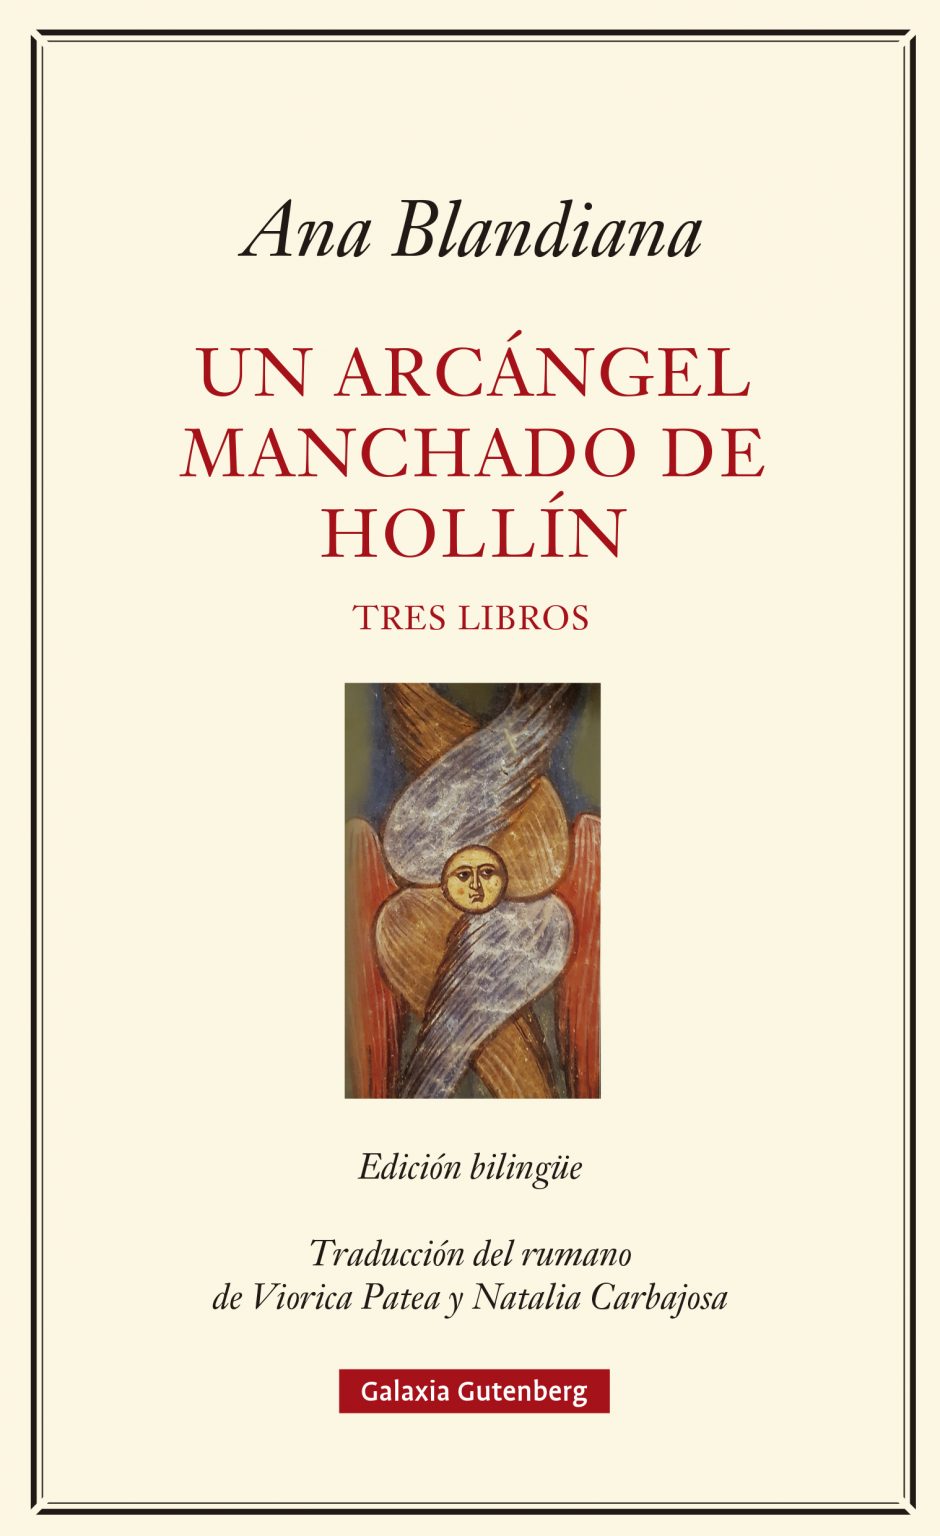 Imagen de portada del libro Un arcángel manchado de hollín